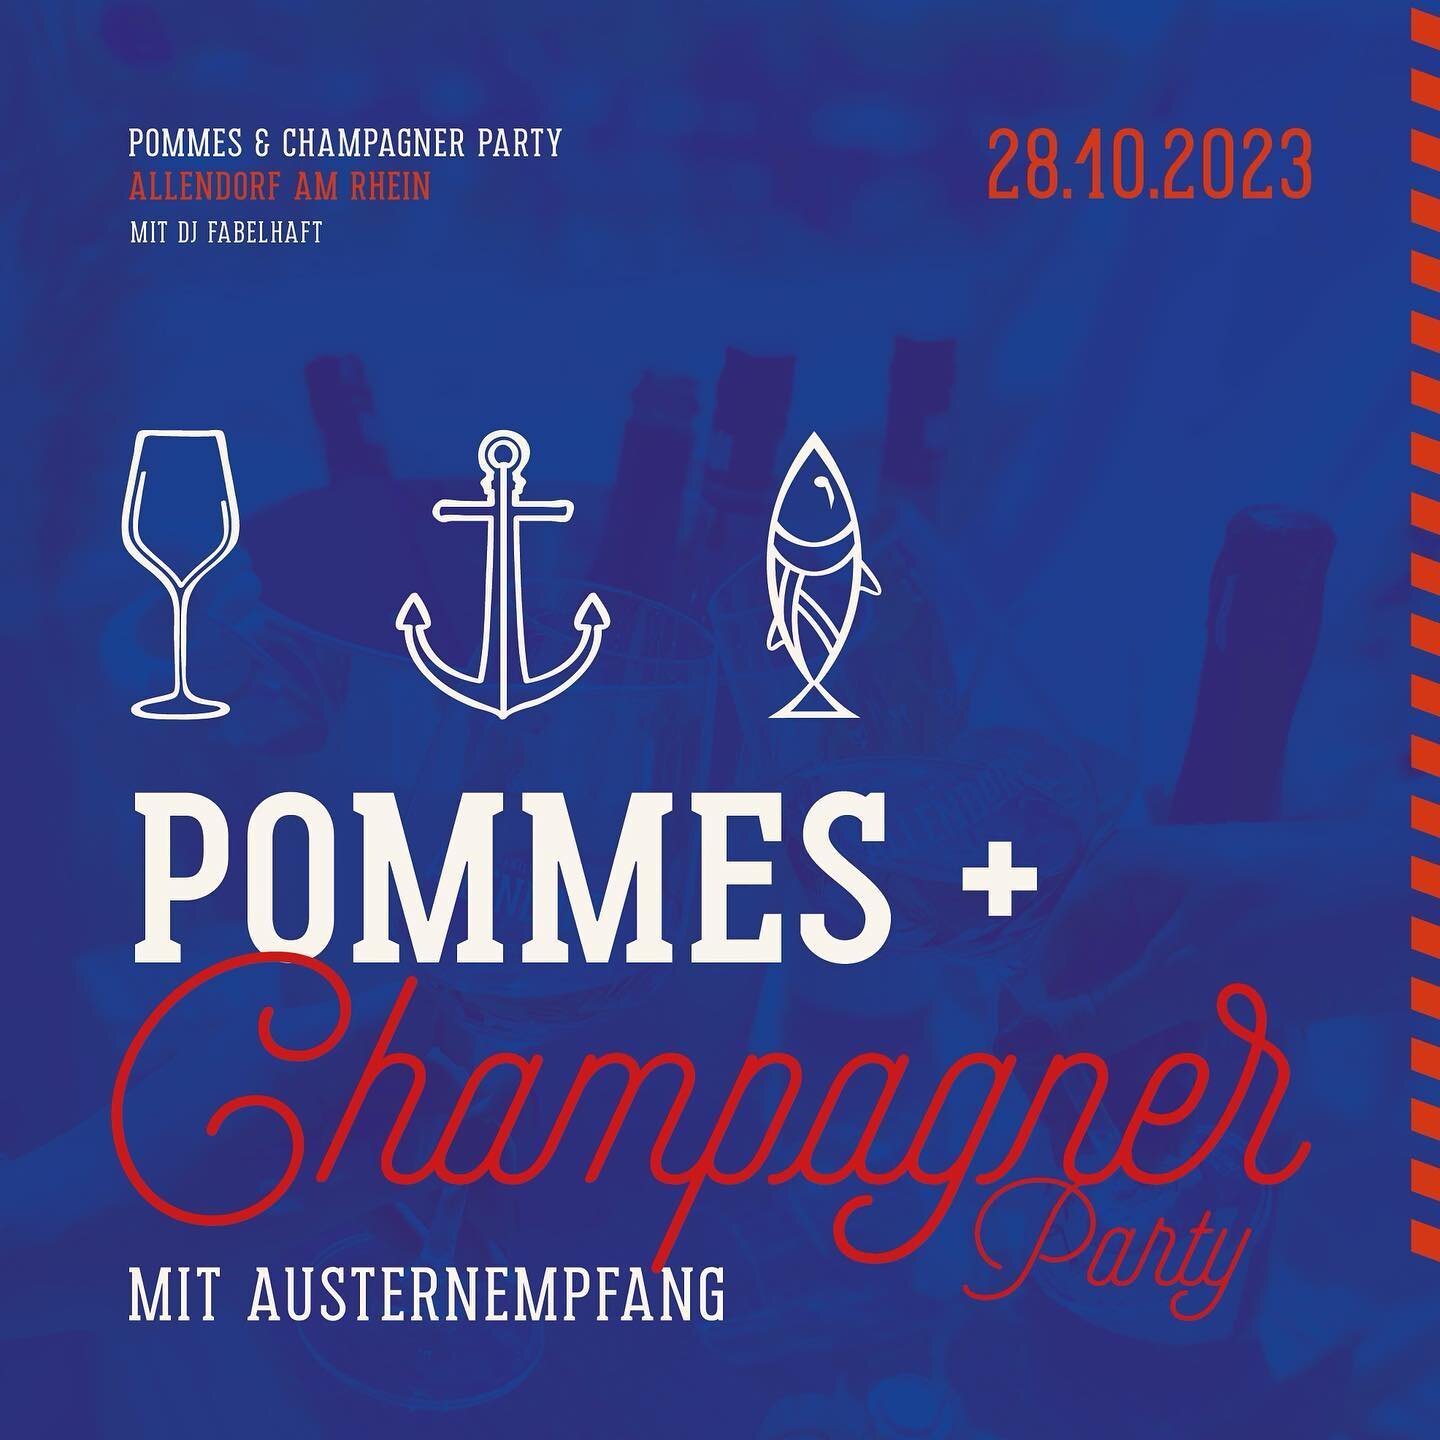 SAVE THE DATE
28.10.2023
Pommes und Champagner Party am Rhein - mit @fabelhaft_dj 

Wir feiern mit euch den Saisonabschluss 2023 - 
das Motto ist Programm 
🍟🦪🥂

Karten gibts am Rhein (NUR BARZAHLUNG) - limitiert auf 99 Personen 🎟️